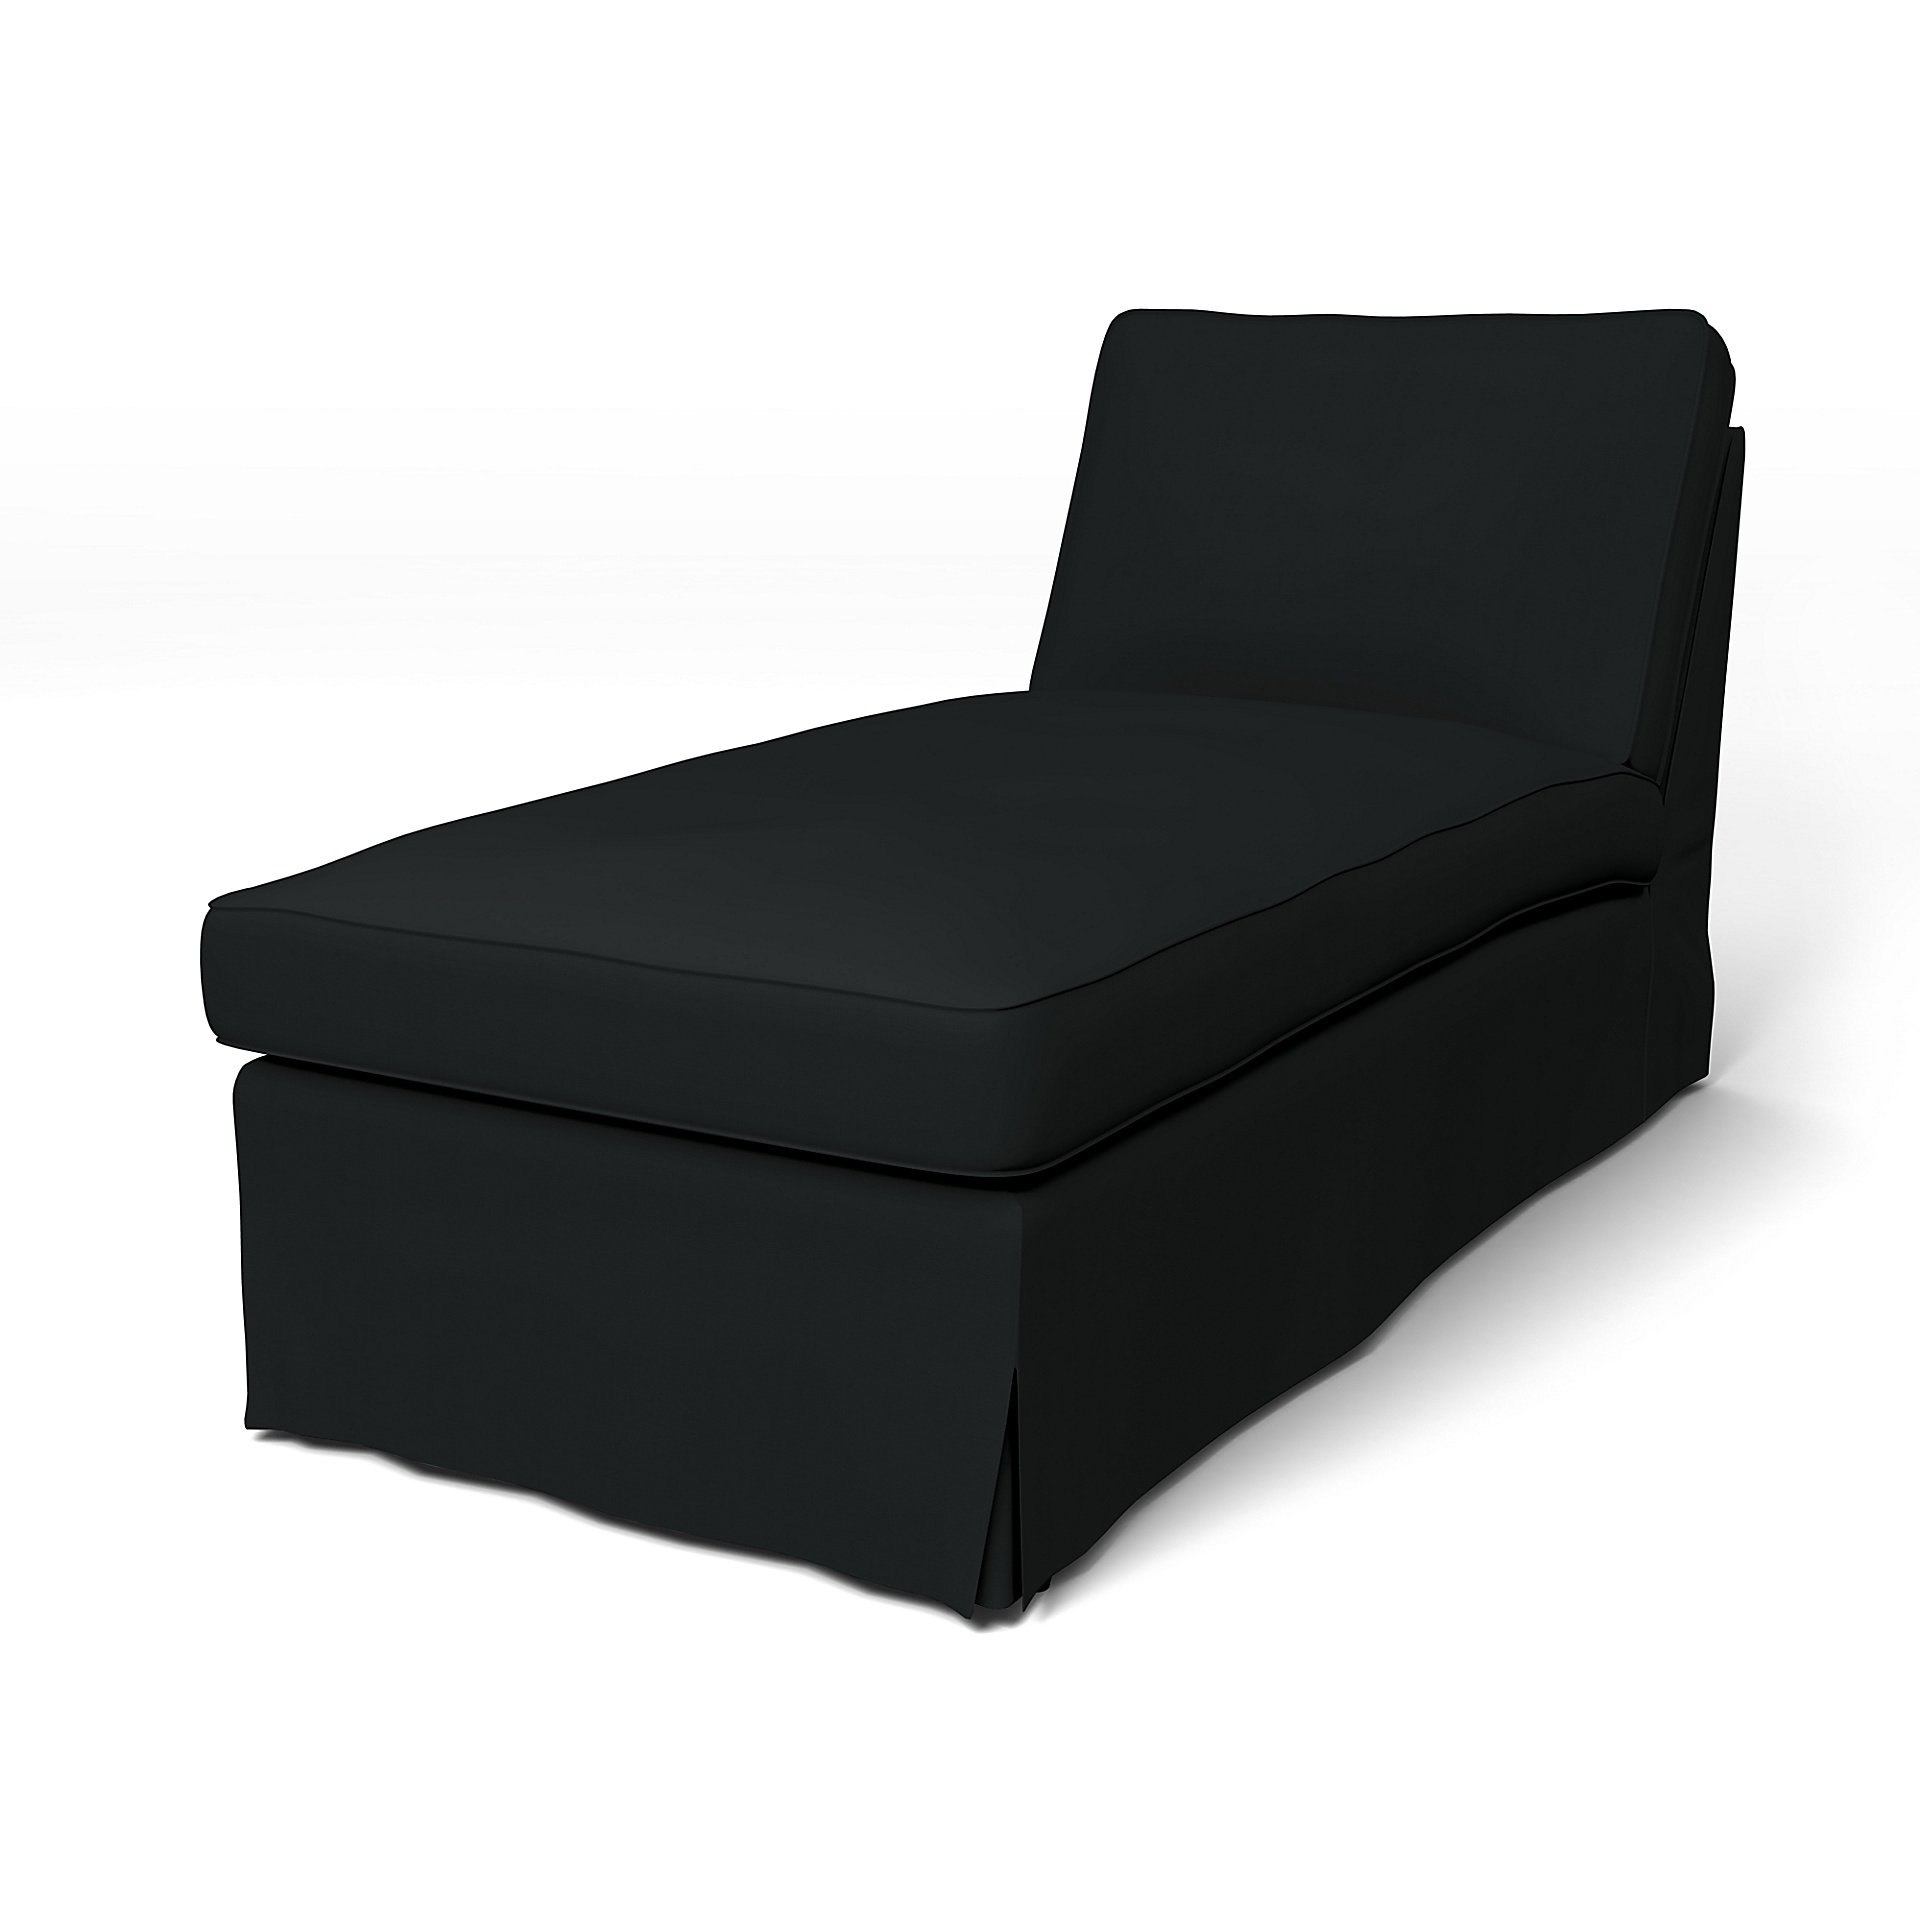 IKEA - Ektorp Chaise Longue Cover, Jet Black, Cotton - Bemz